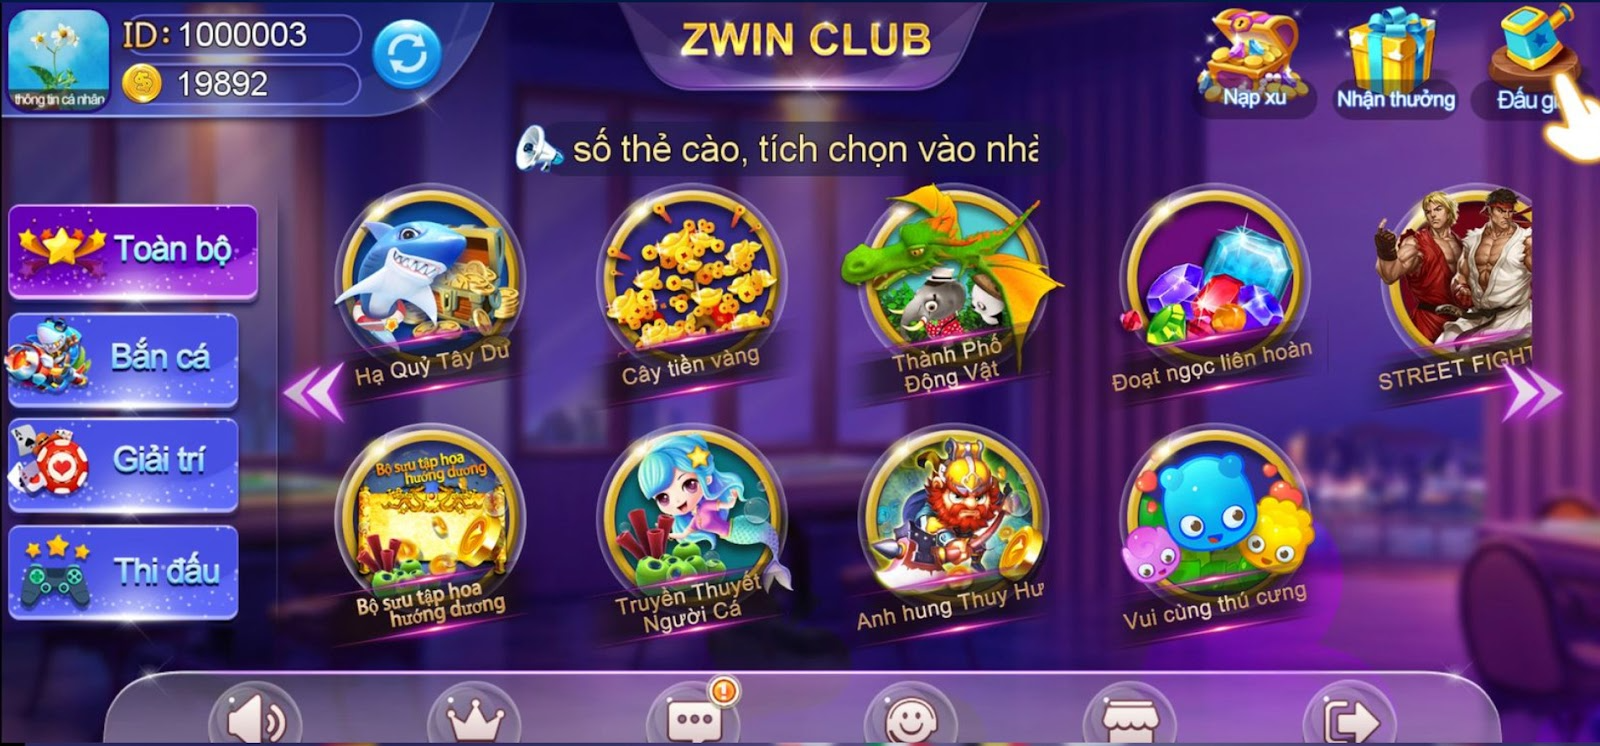 ZWin Club | ZWin.Me luôn không ngừng cố gắng cải thiện và nâng cấp dịch vụ